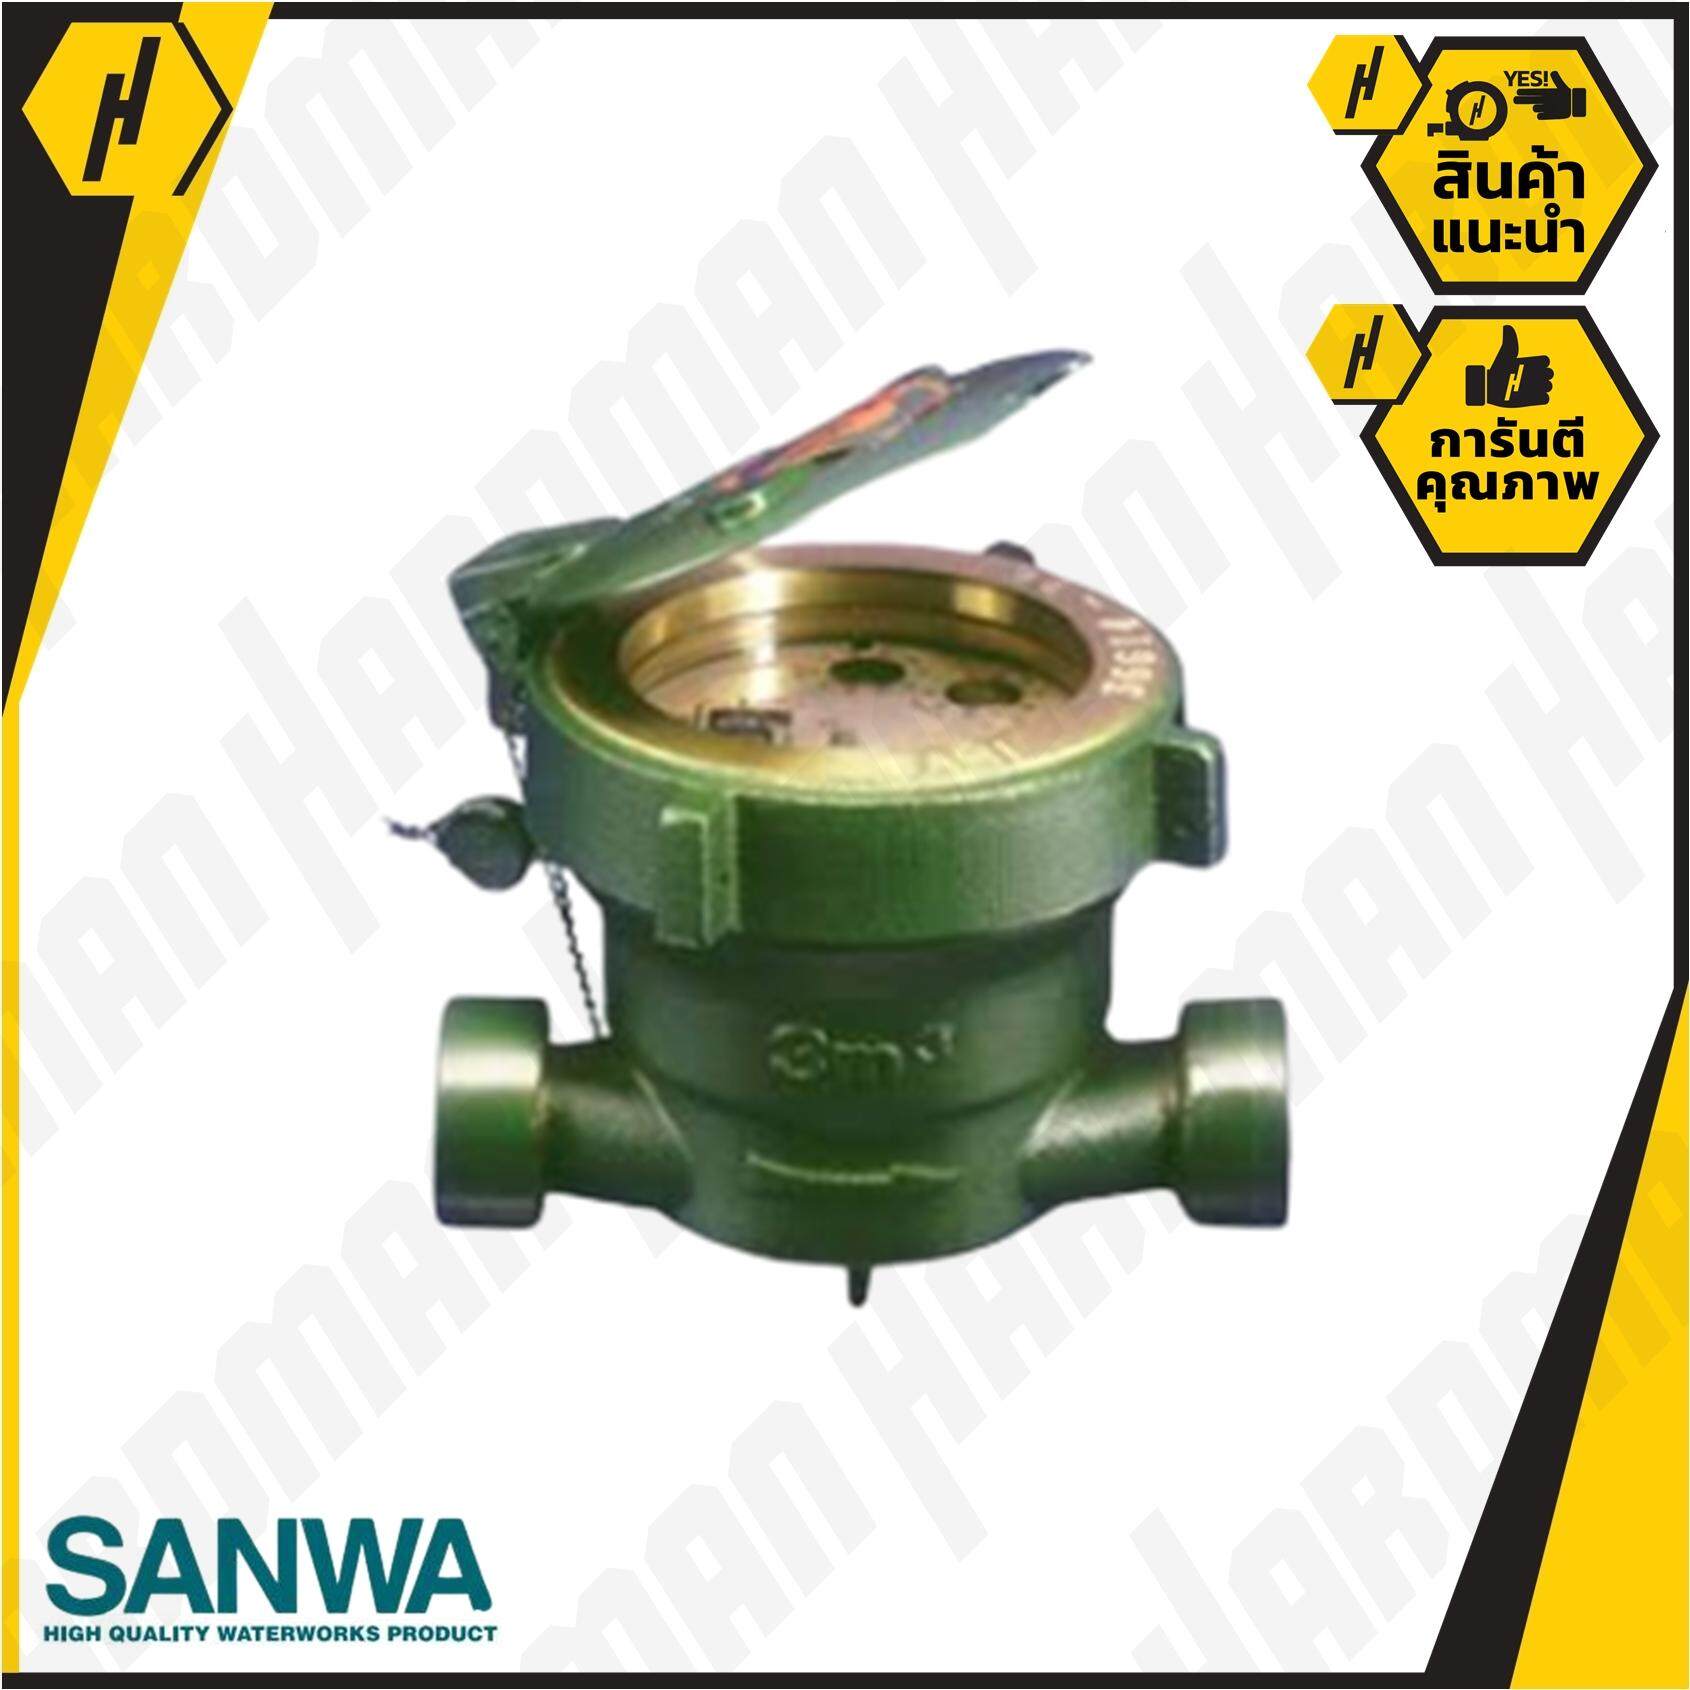 SANWA มาตรวัดน้ำ มิเตอร์น้ำ (ระบบเฟืองจักรชั้นเดียว) ซันวา